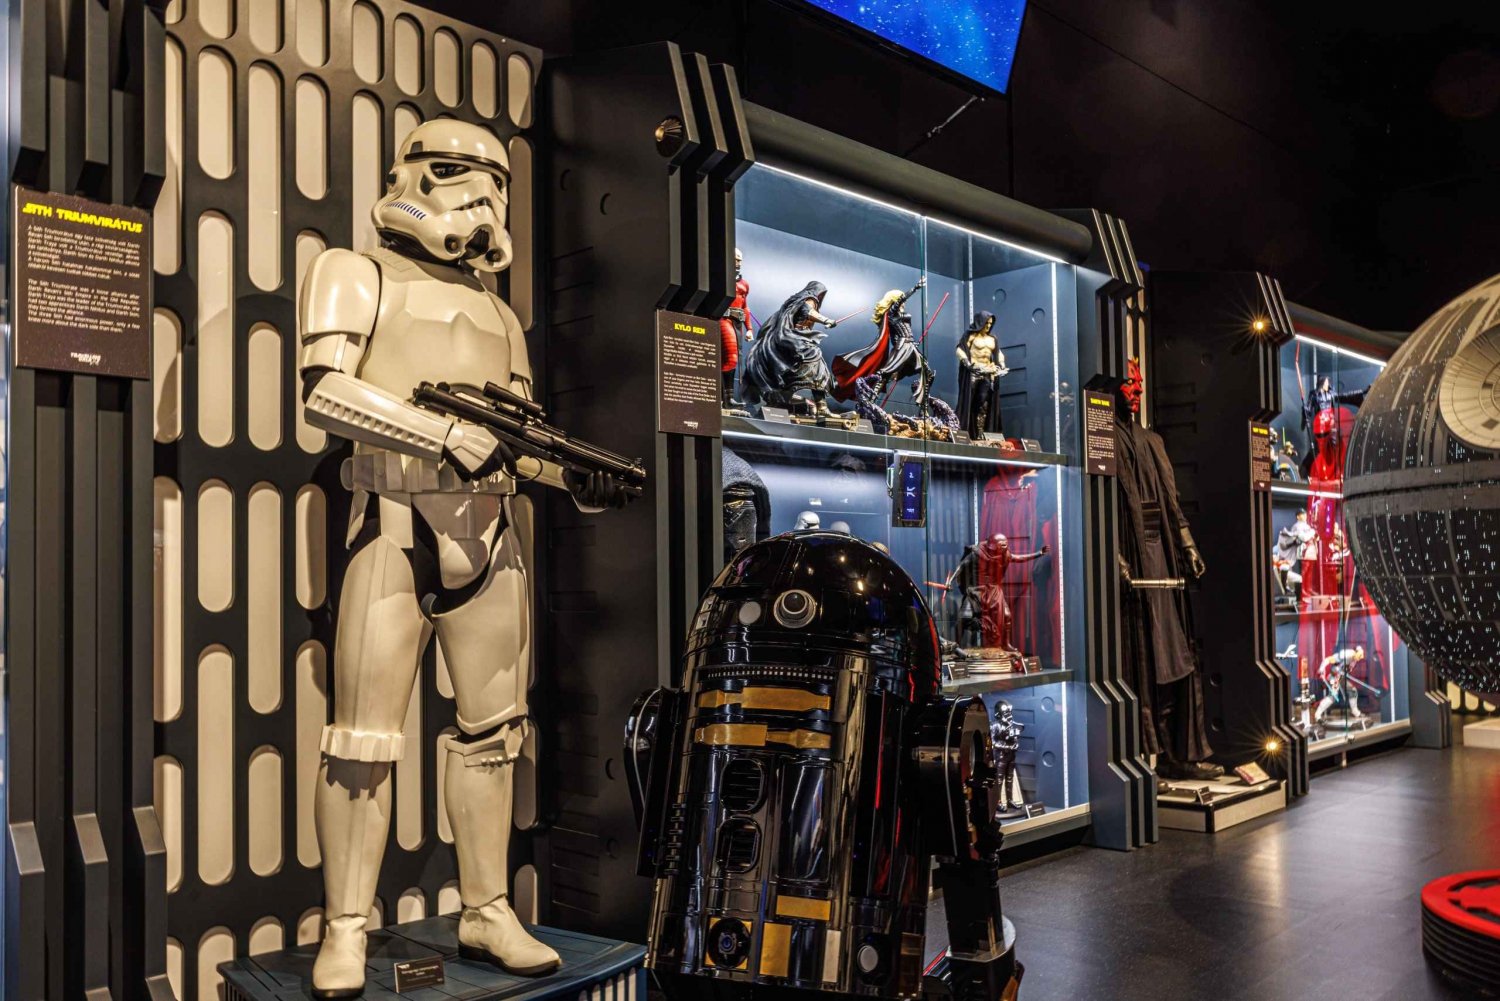 Star Wars Interactive Exhibition Budapest